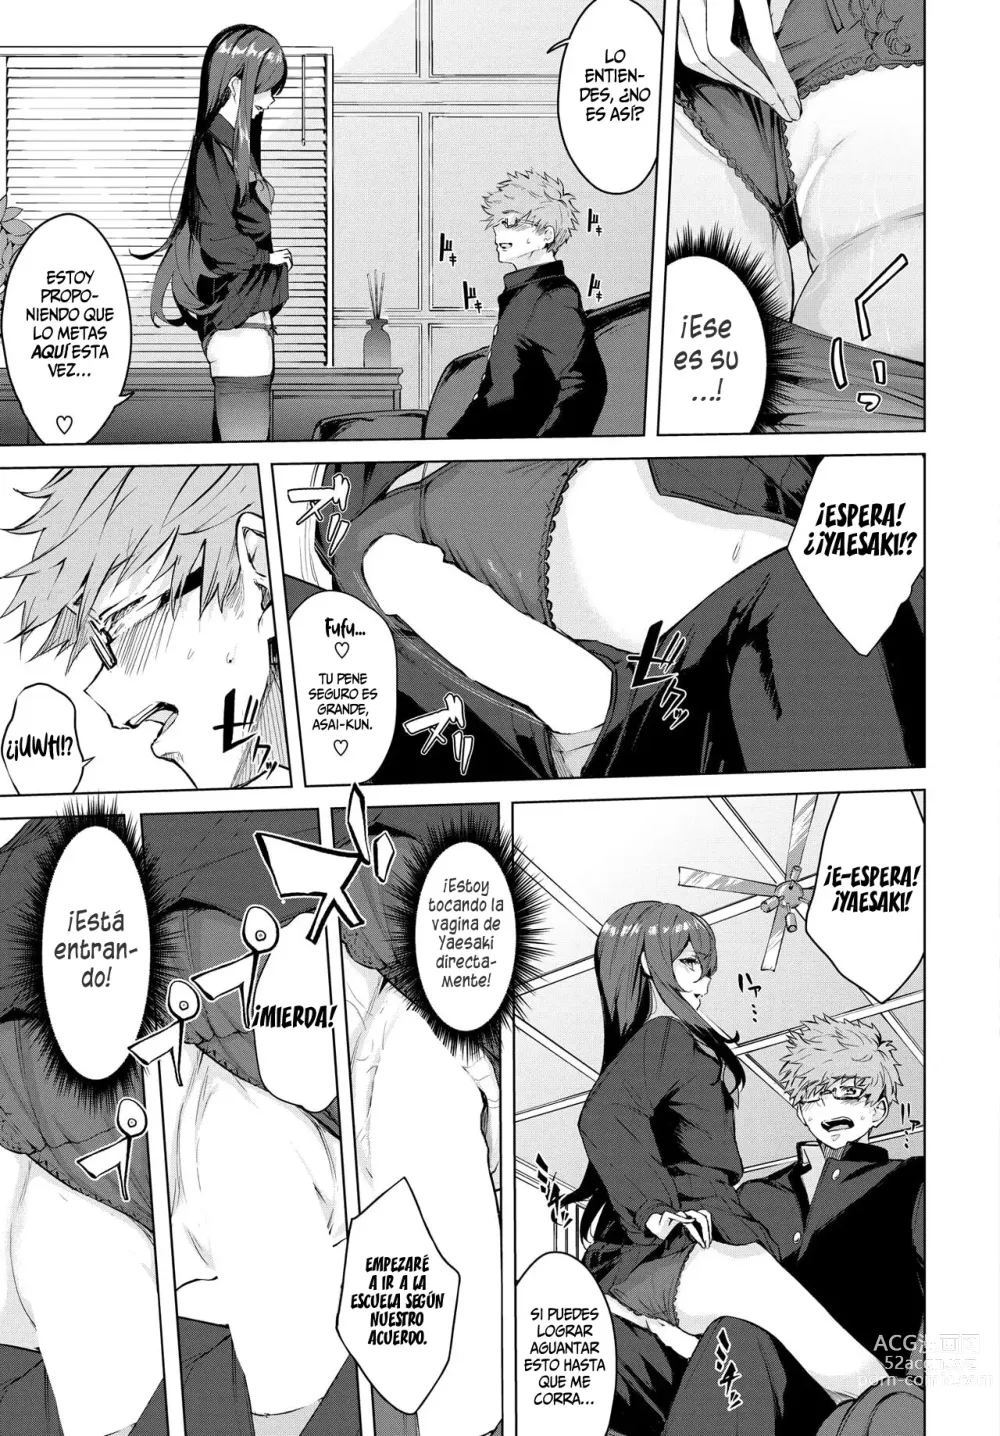 Page 11 of manga 